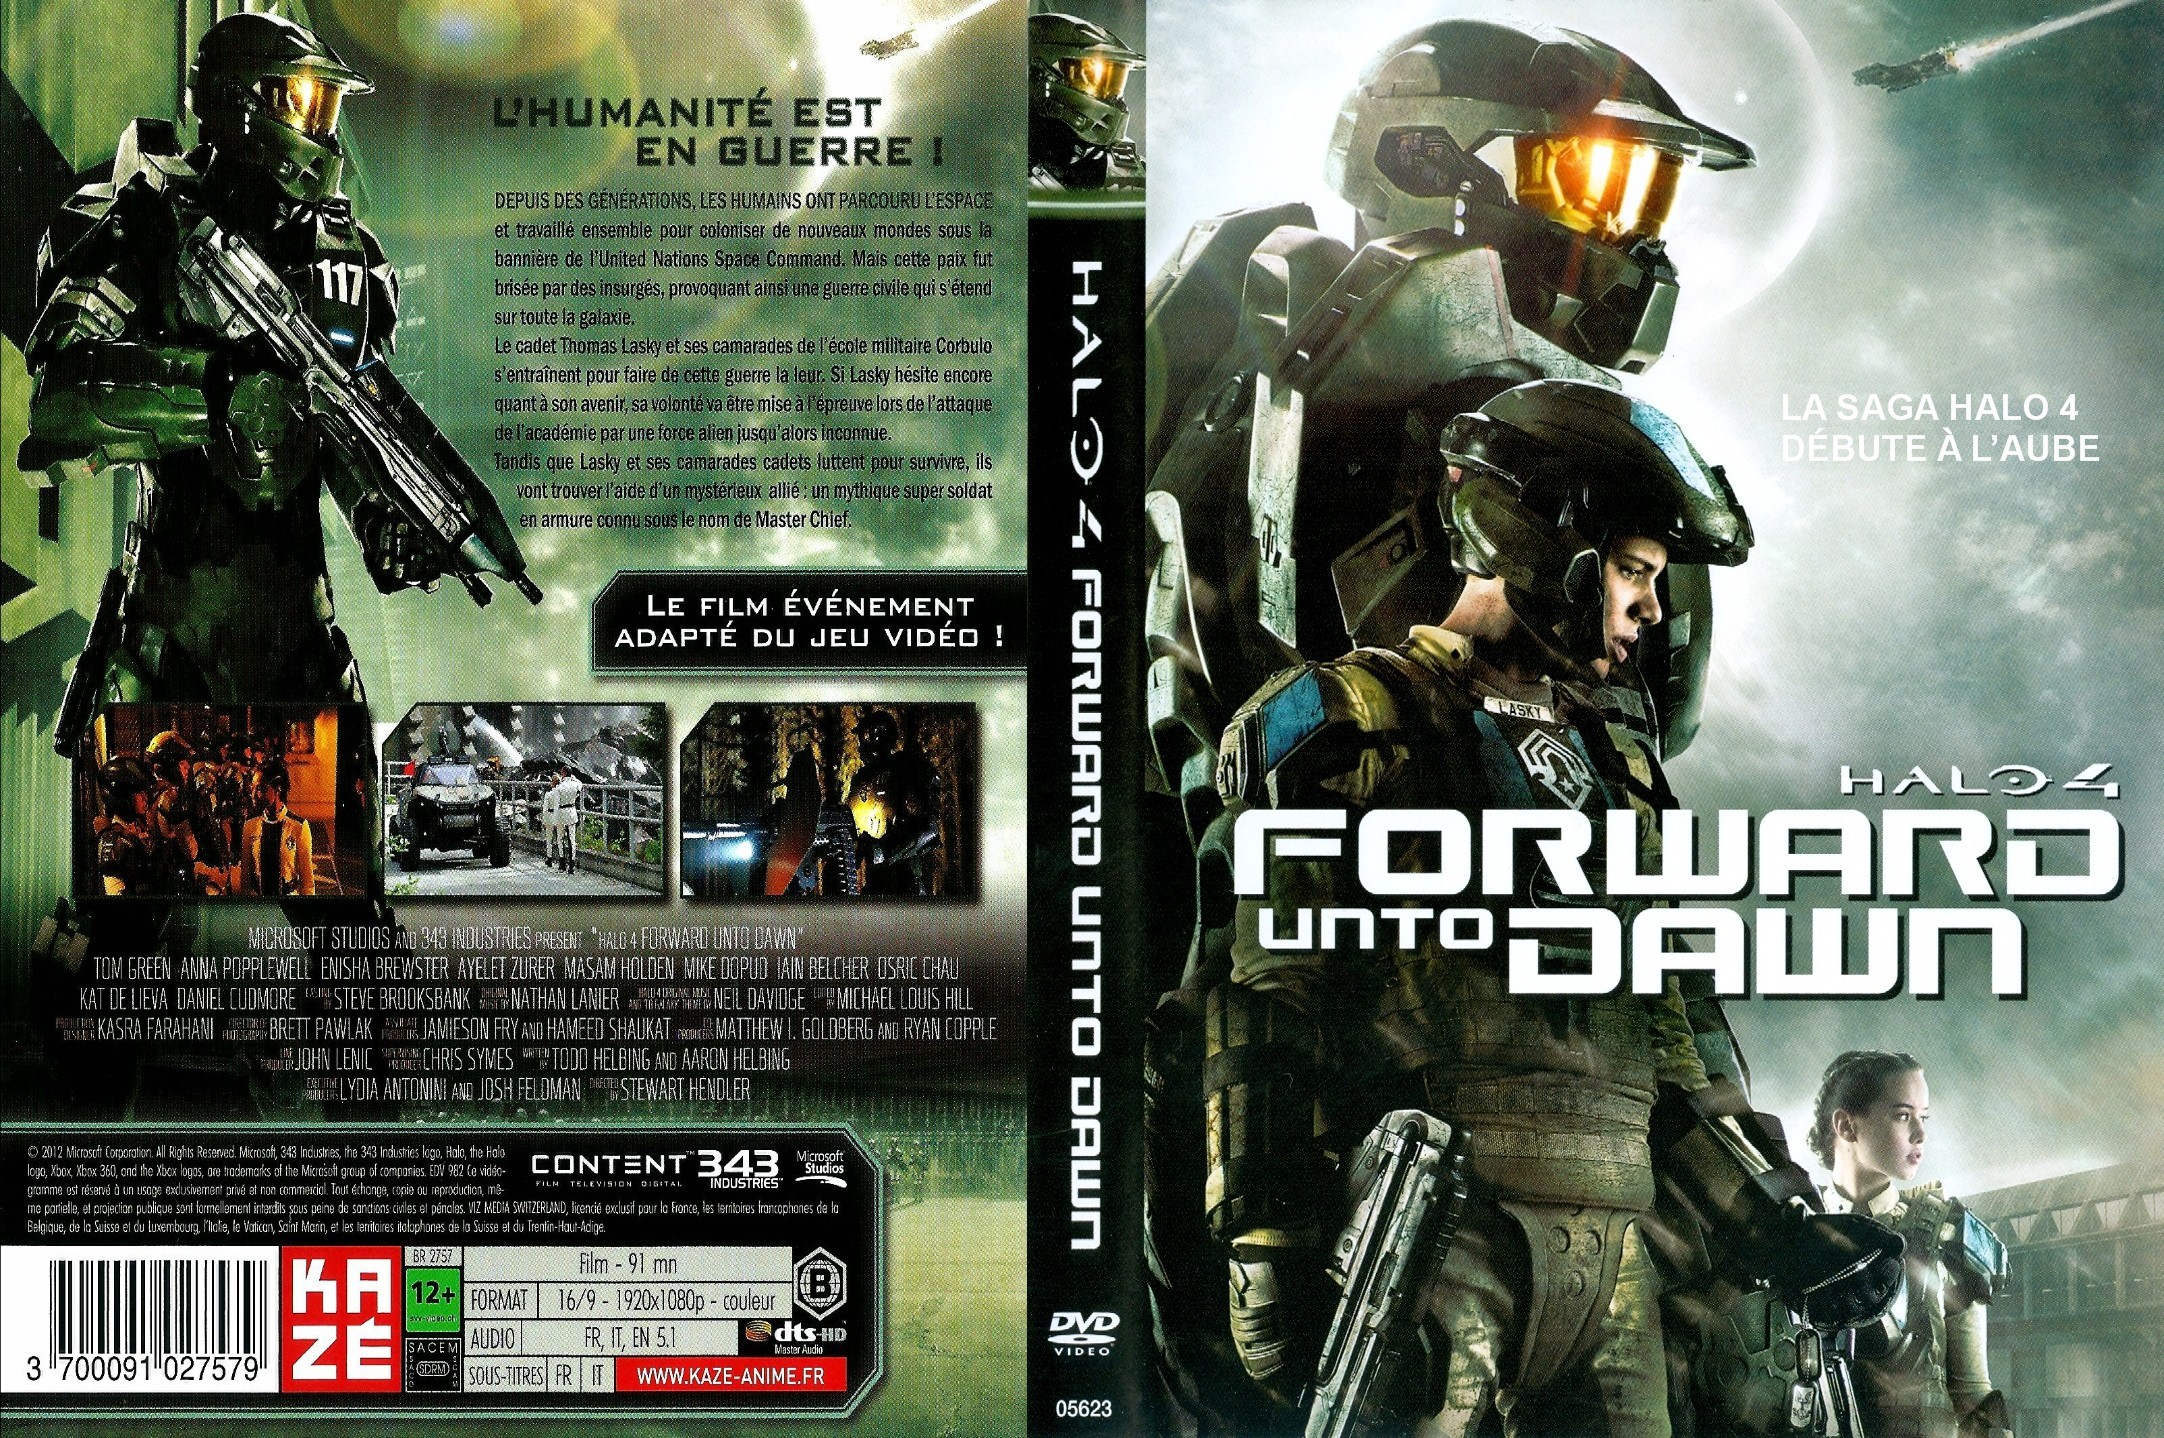 Jaquette DVD Halo 4 forward unto dawn